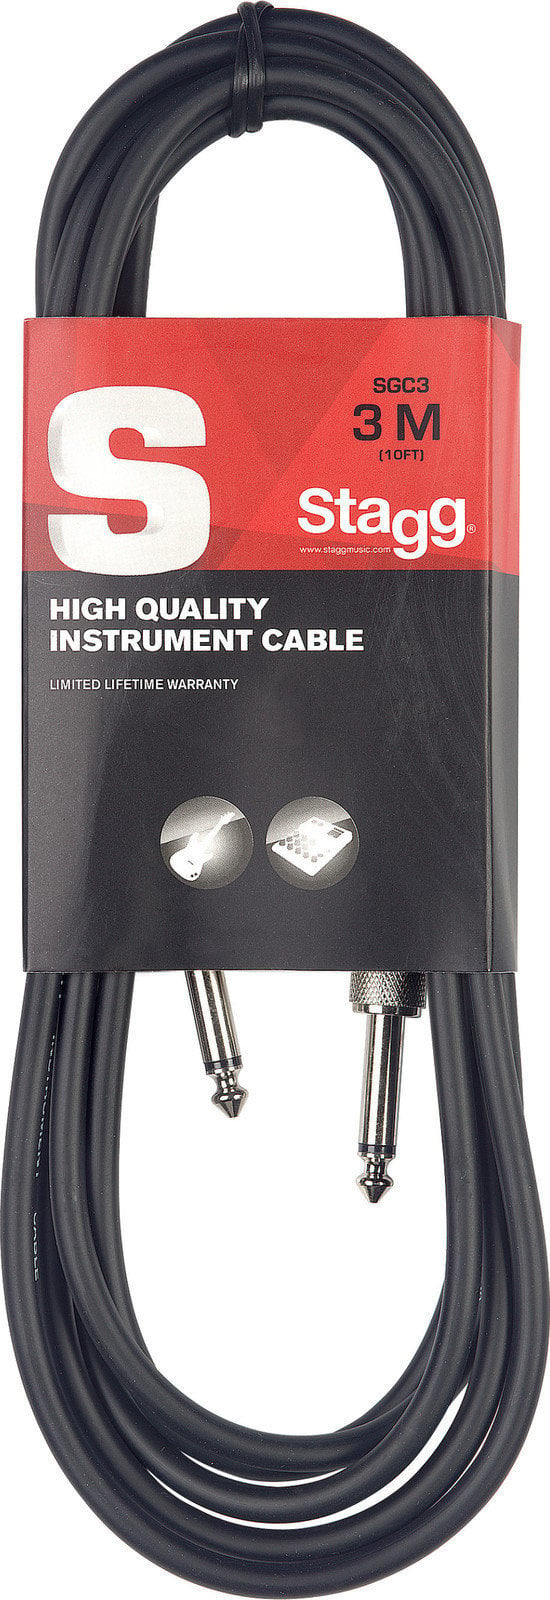 Câble pour instrument Stagg SGC3 Noir 3 m Droit - Droit